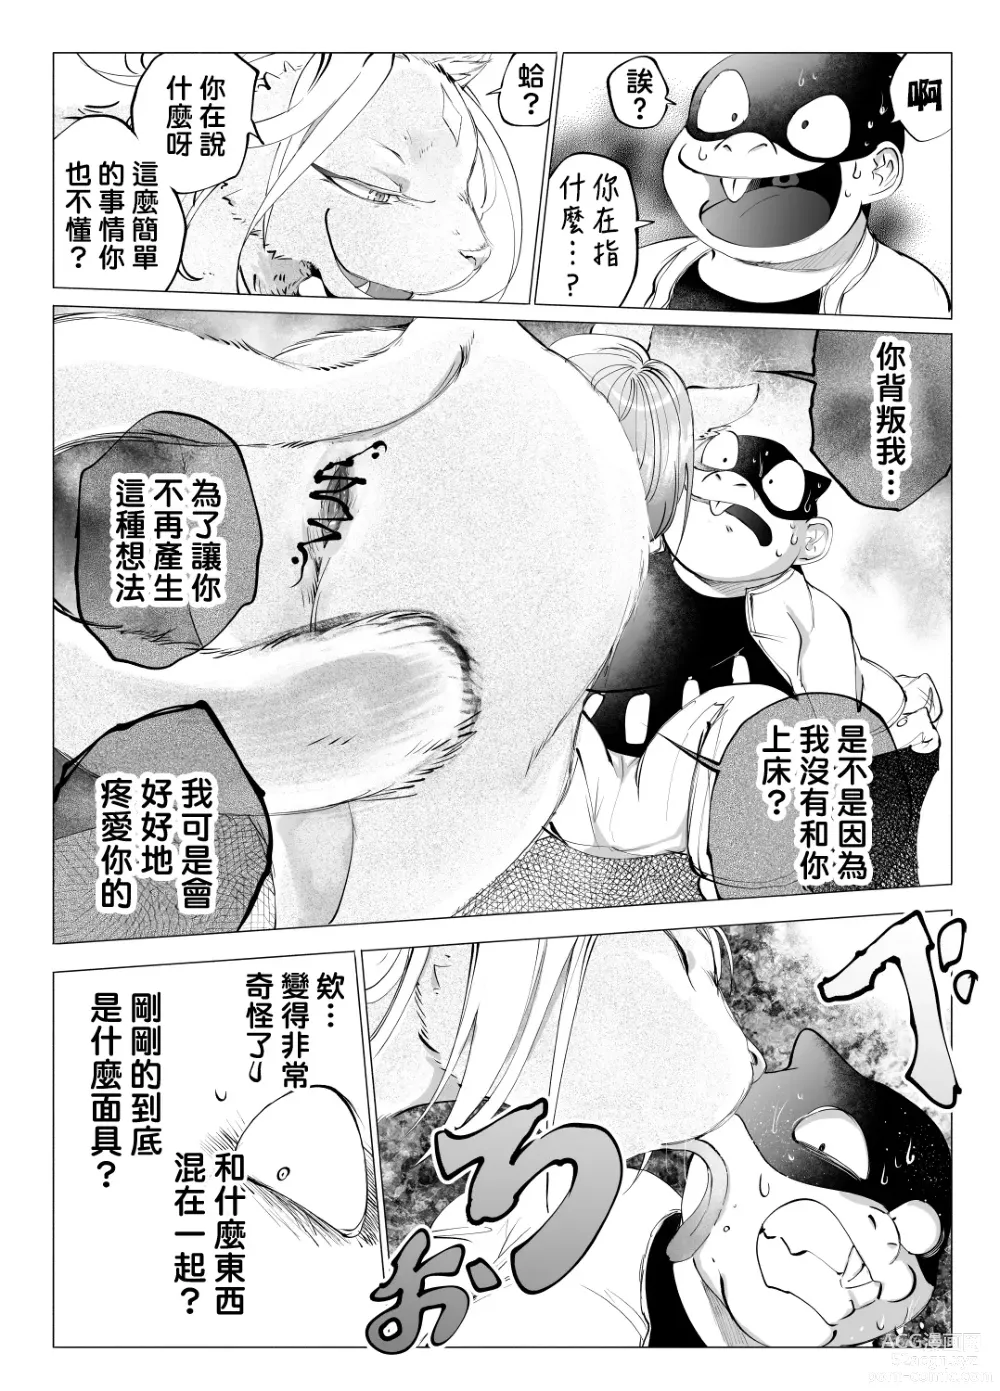 Page 10 of doujinshi 盗贼与面具遗迹